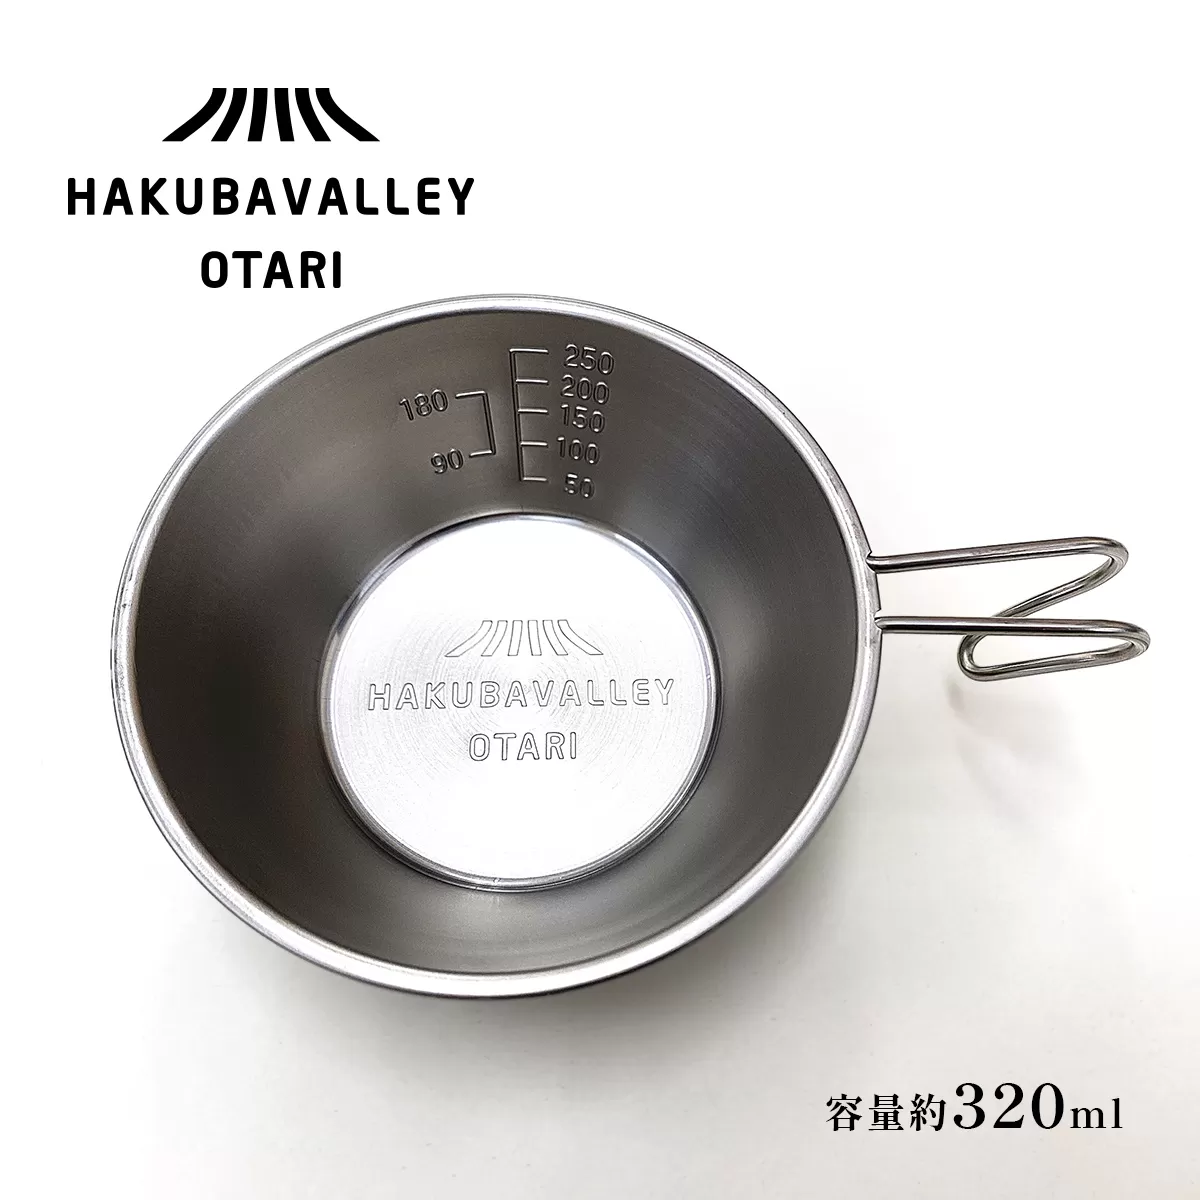 HAKUBA VALLEY OTARI オリジナルシェラカップ 